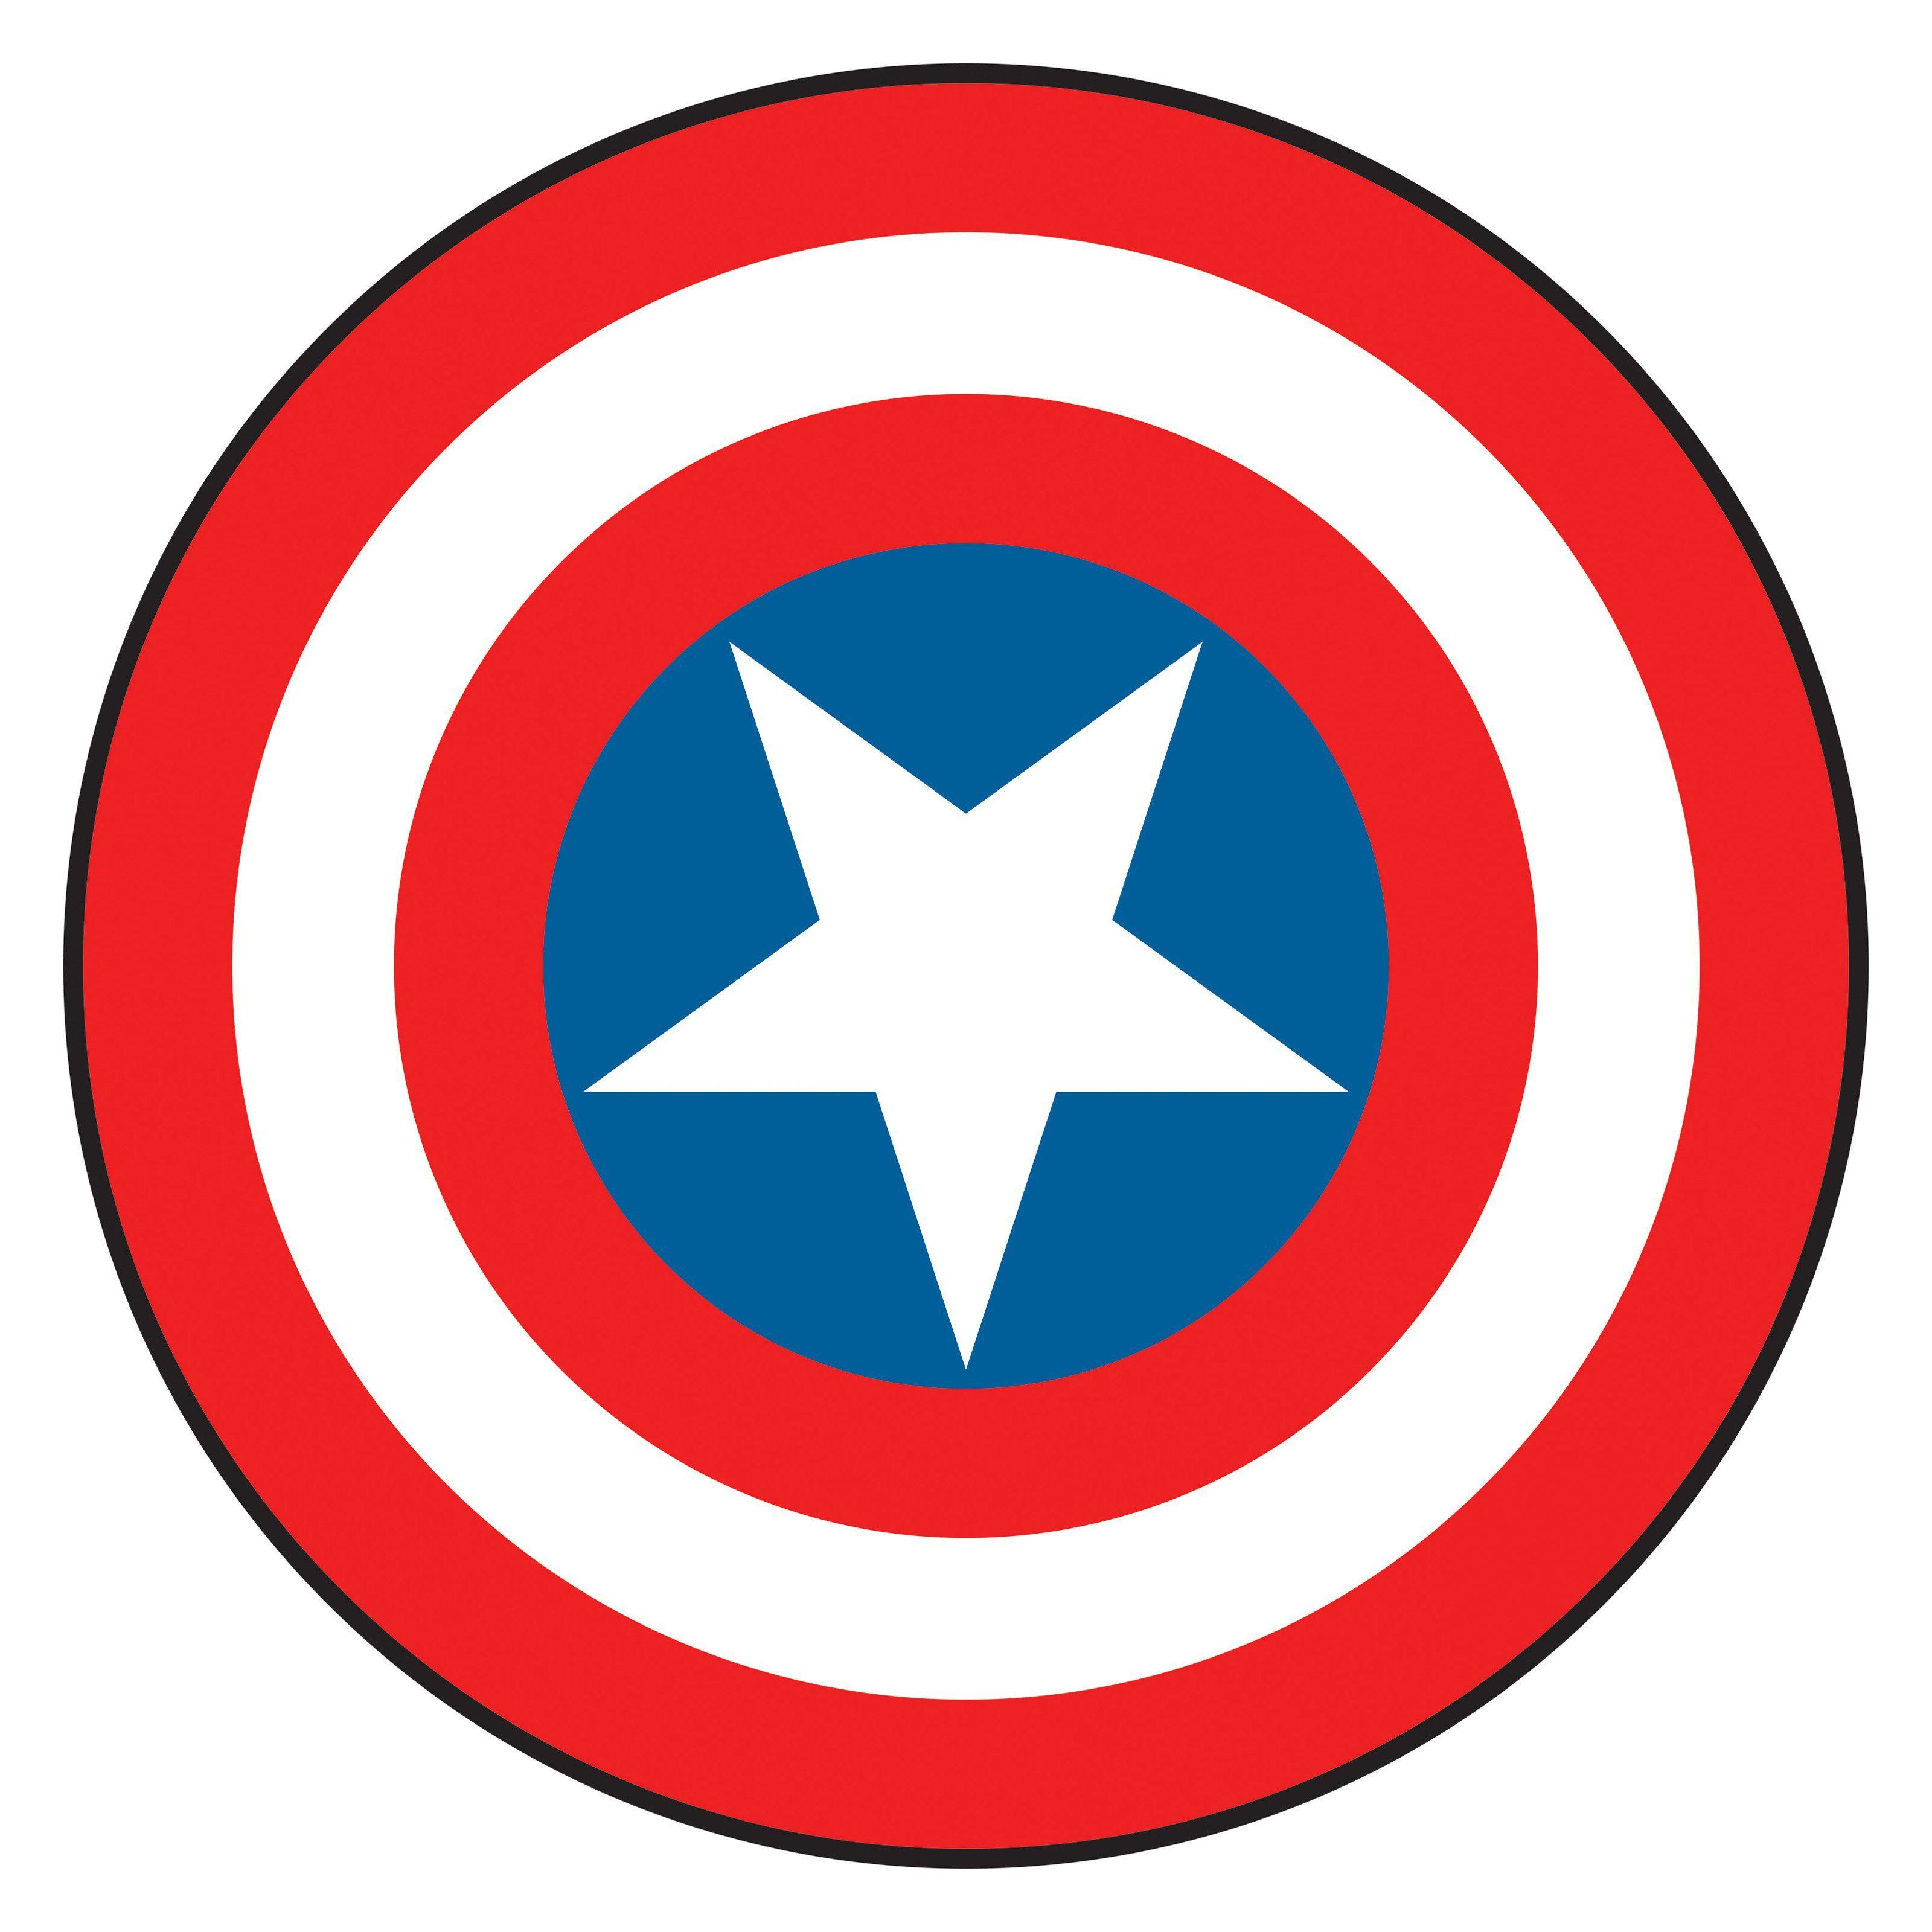 Captain America Shield Logo - Captain America Shield Clipart